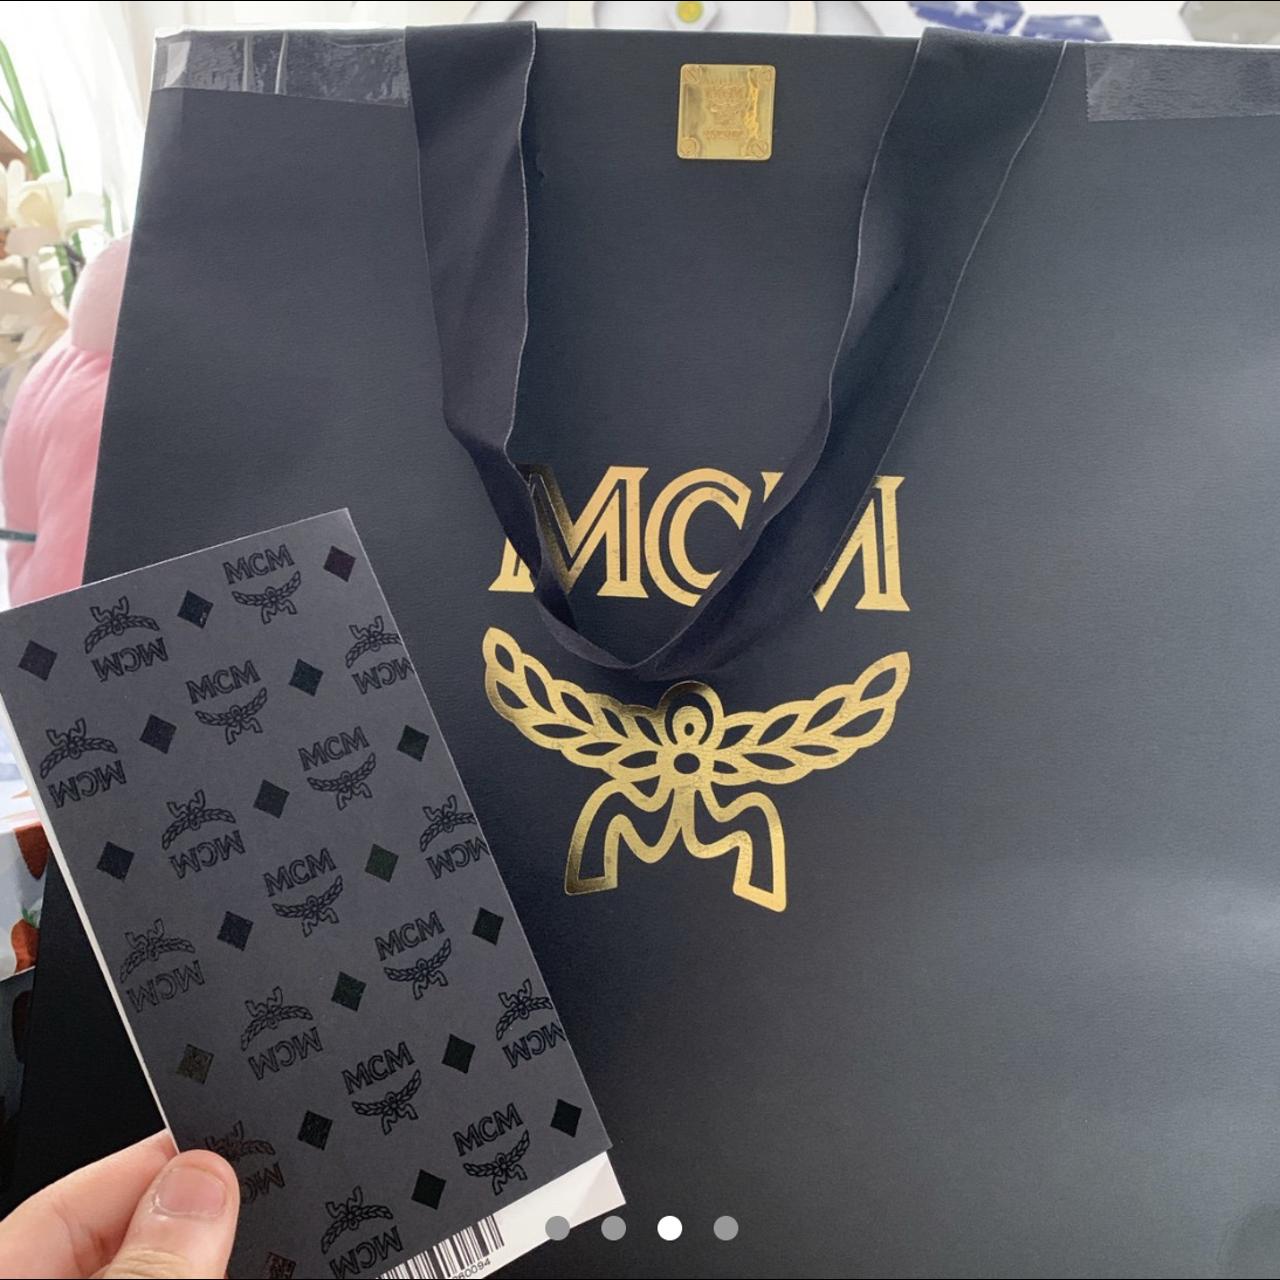 MCM x BAPE Stark Belt Bag in Camo Visetos New with - Depop